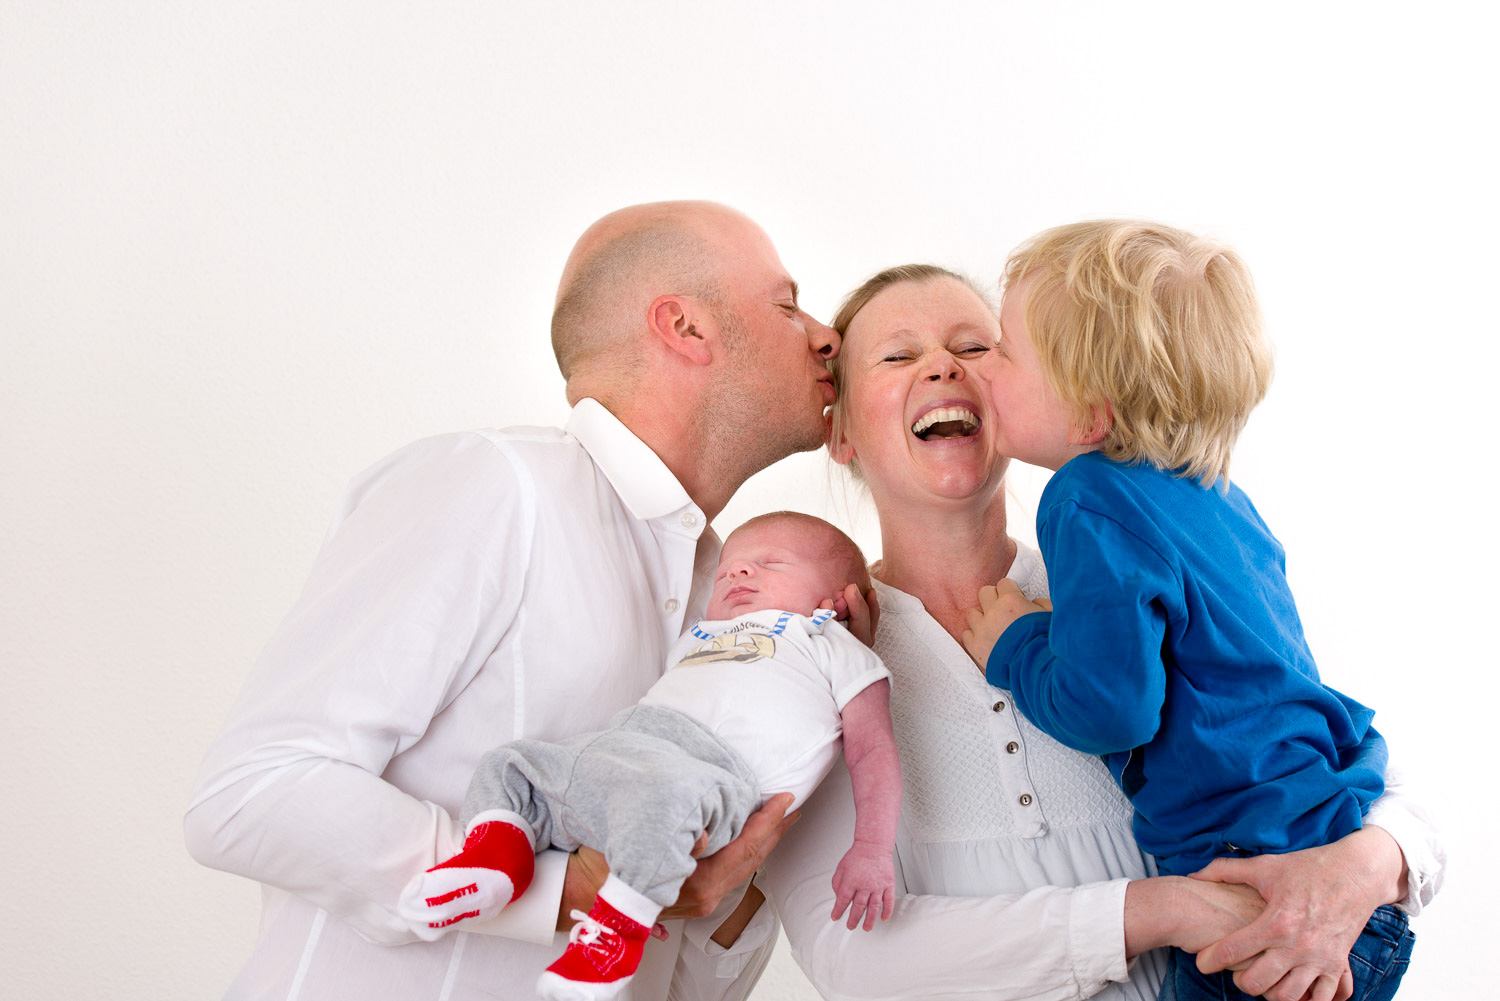 Familienfotografie Erlangen-Shooting Erlangen, Familienfotografie-Kind und Mann küssen die Frau bzw. die Mutter. Mann hat neugeborenes auf dem Arm.